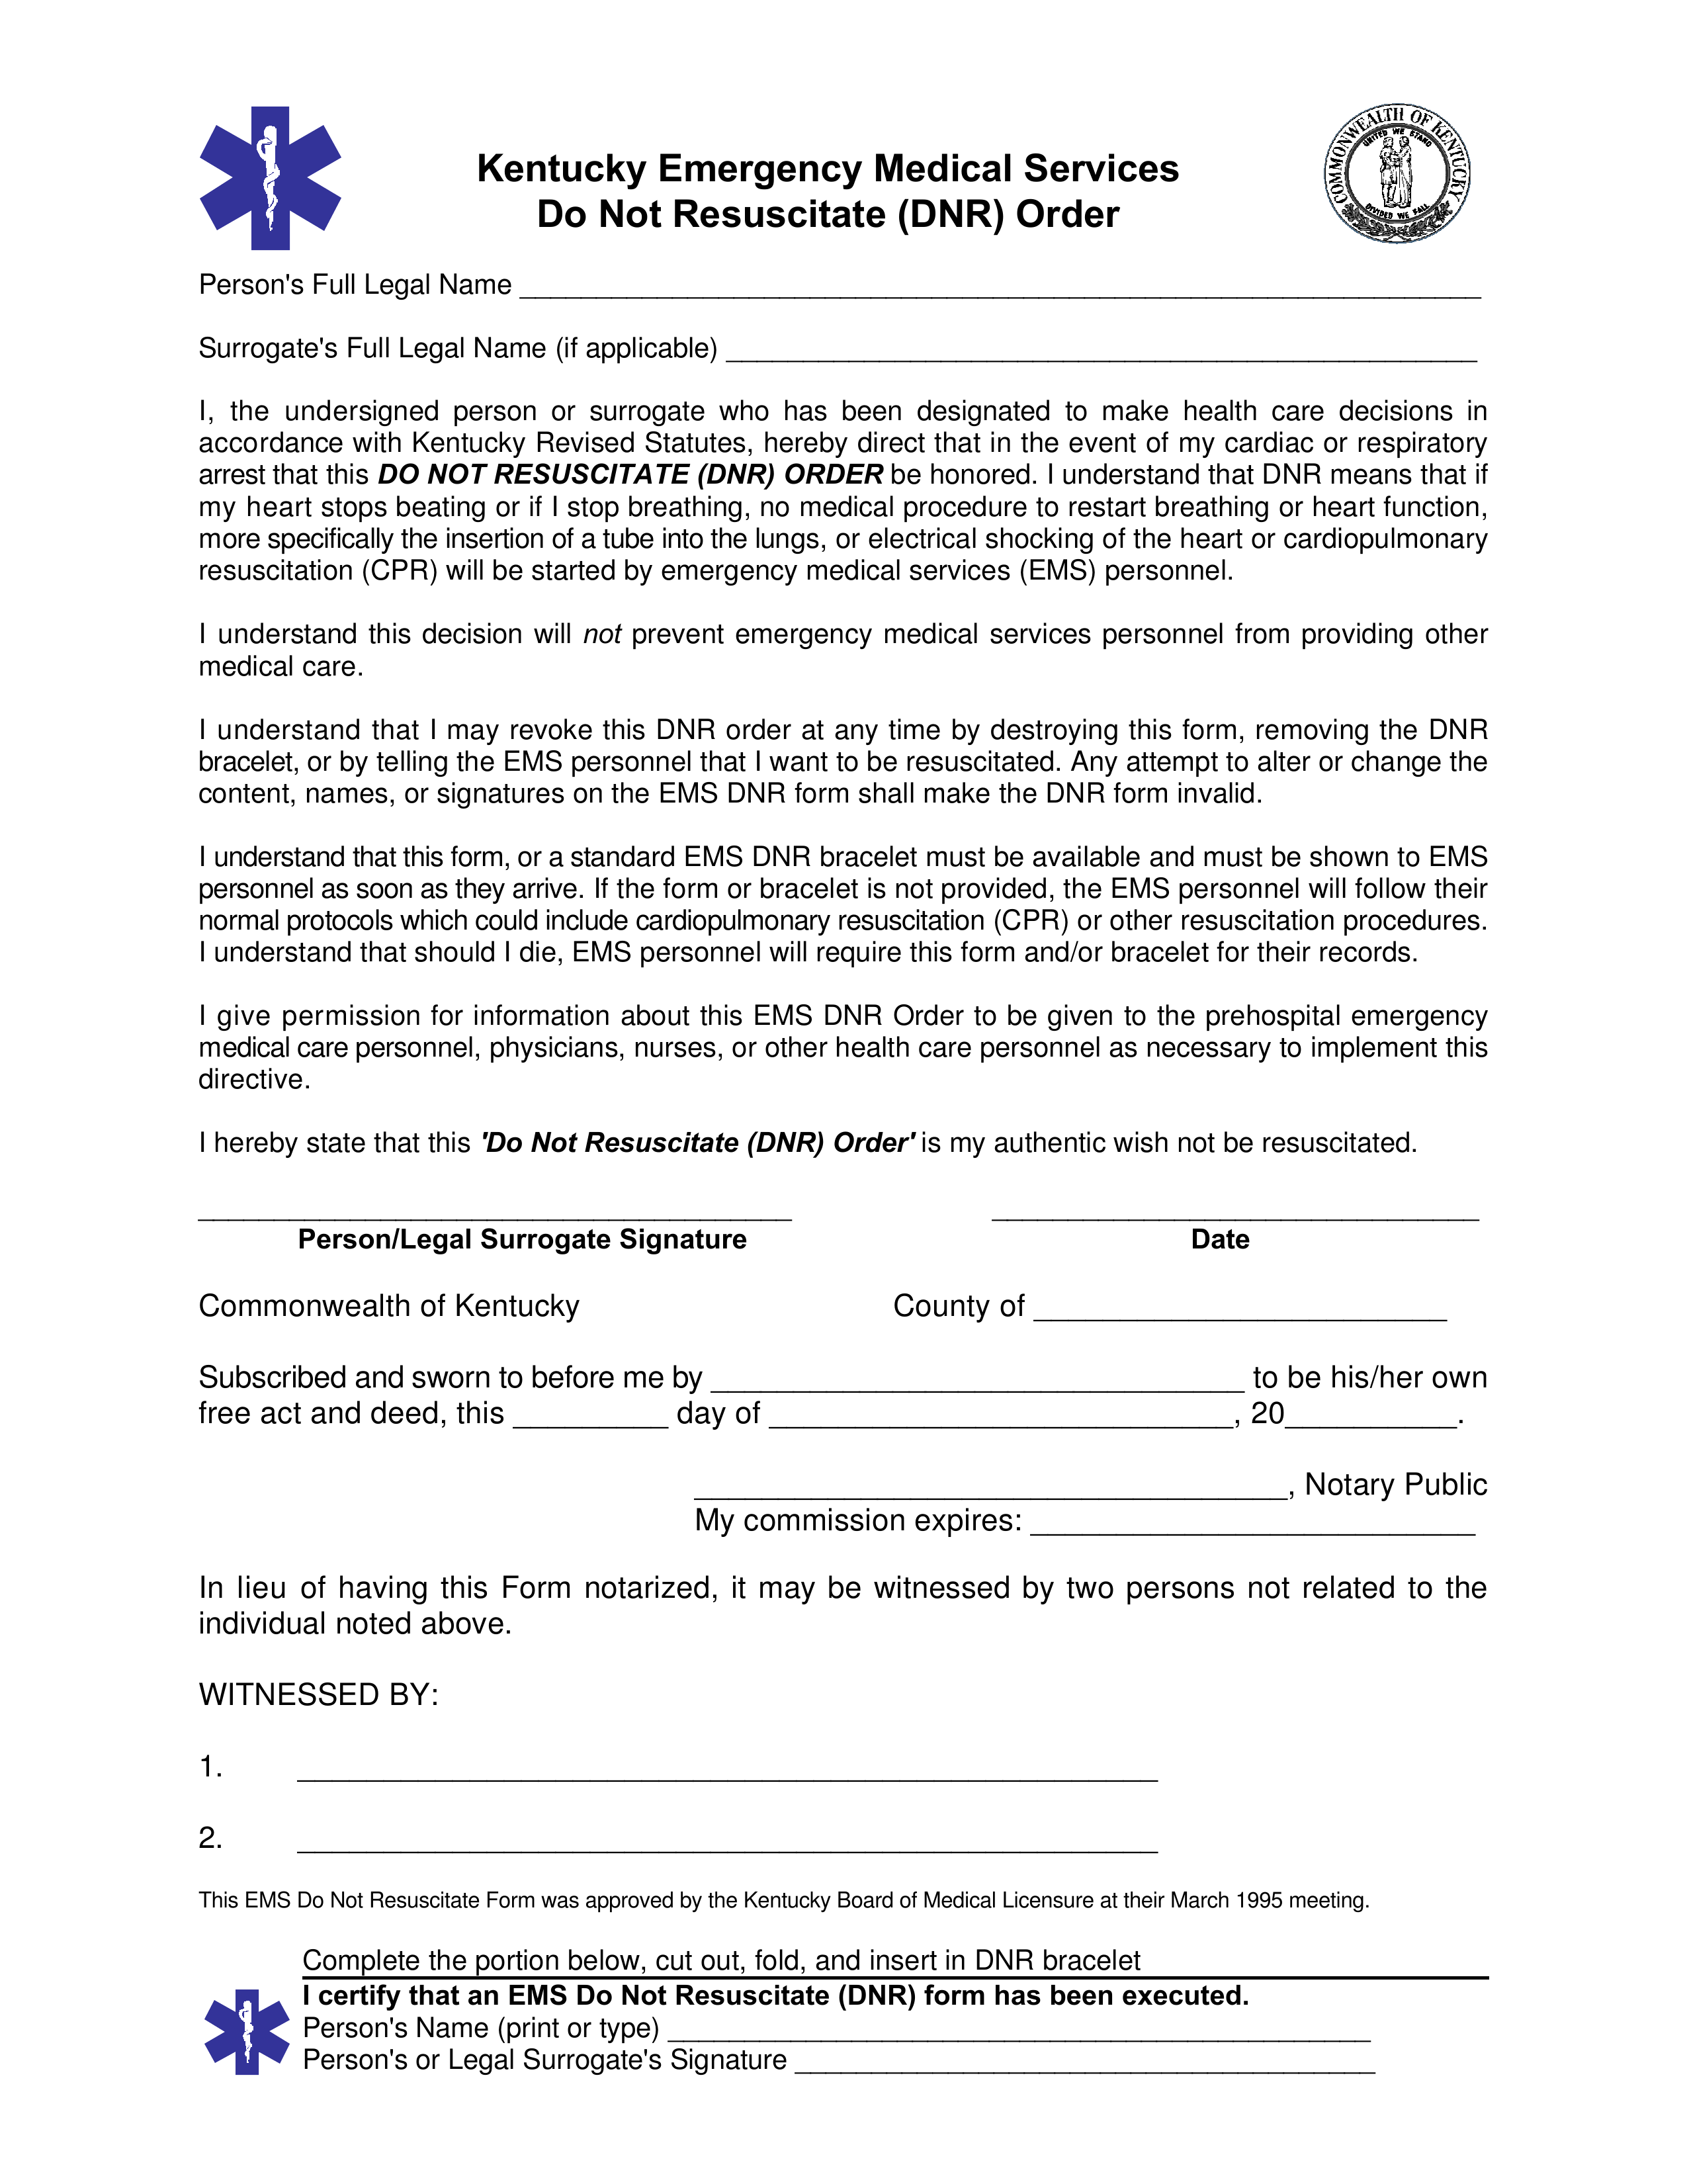 Kentucky Do Not Resuscitate (DNR) Order Form